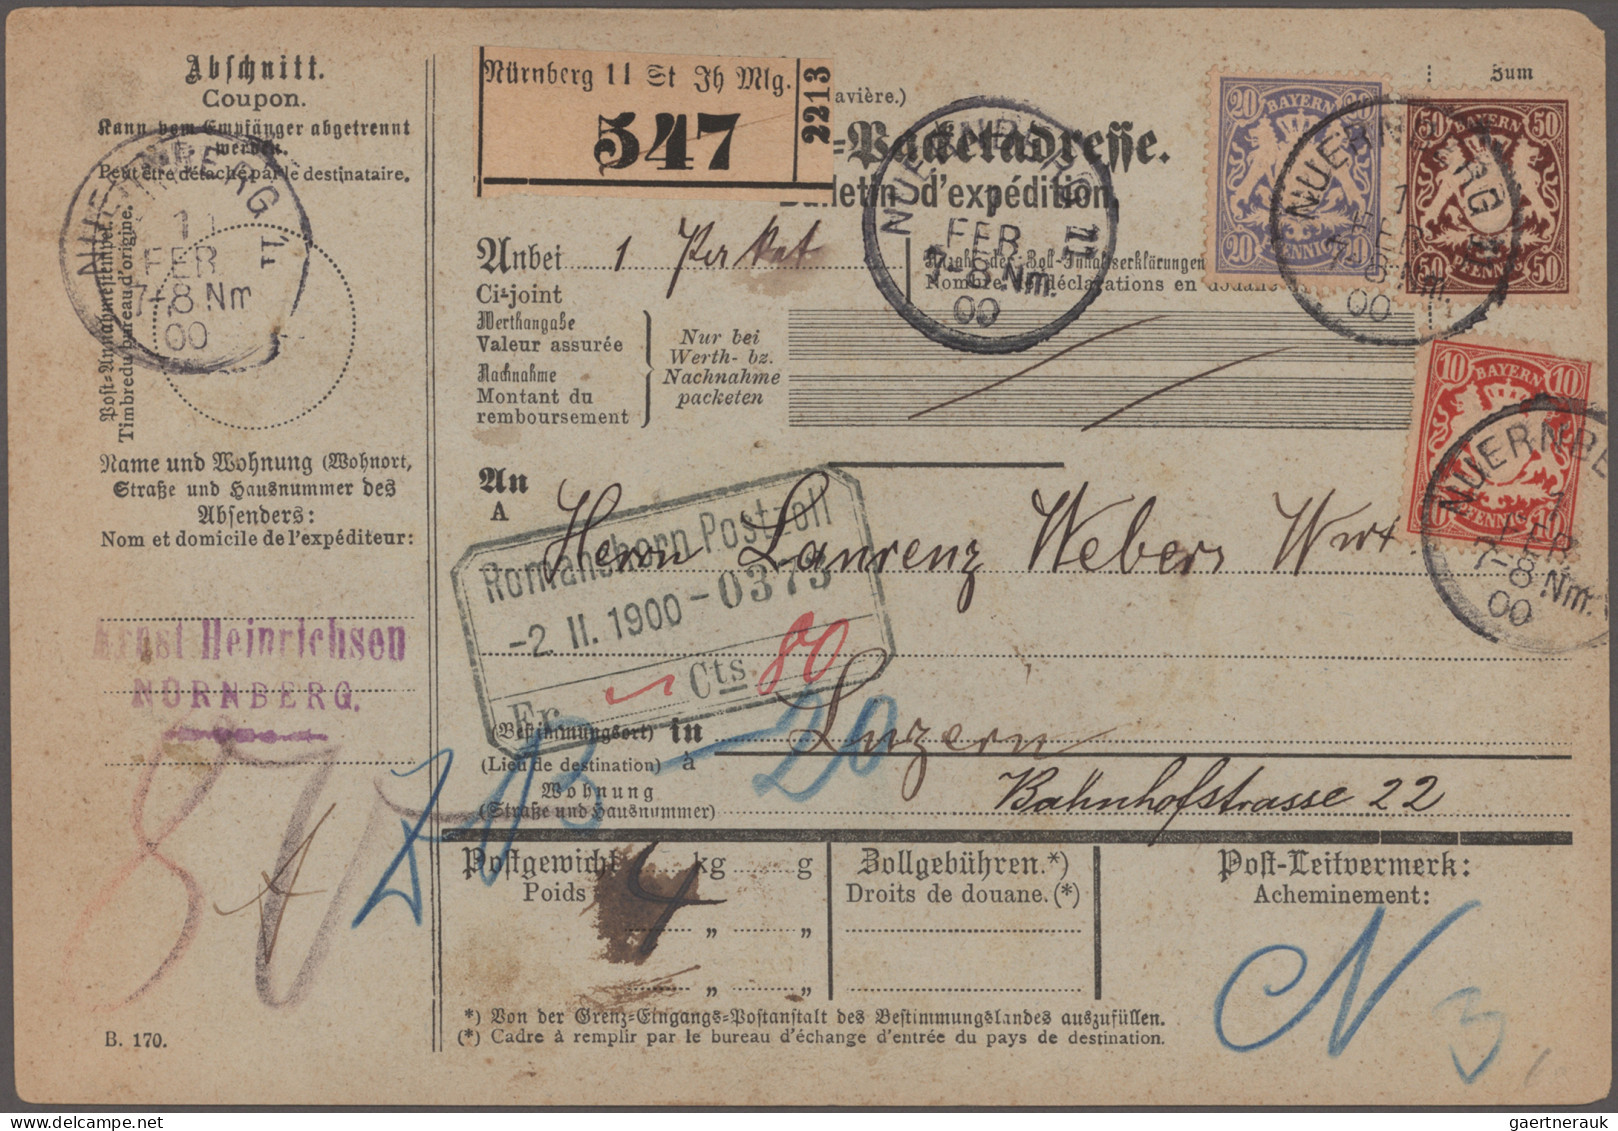 Bayern - Marken und Briefe: 1884/1910, Wappen-Marken, Partie von 26 Briefen und